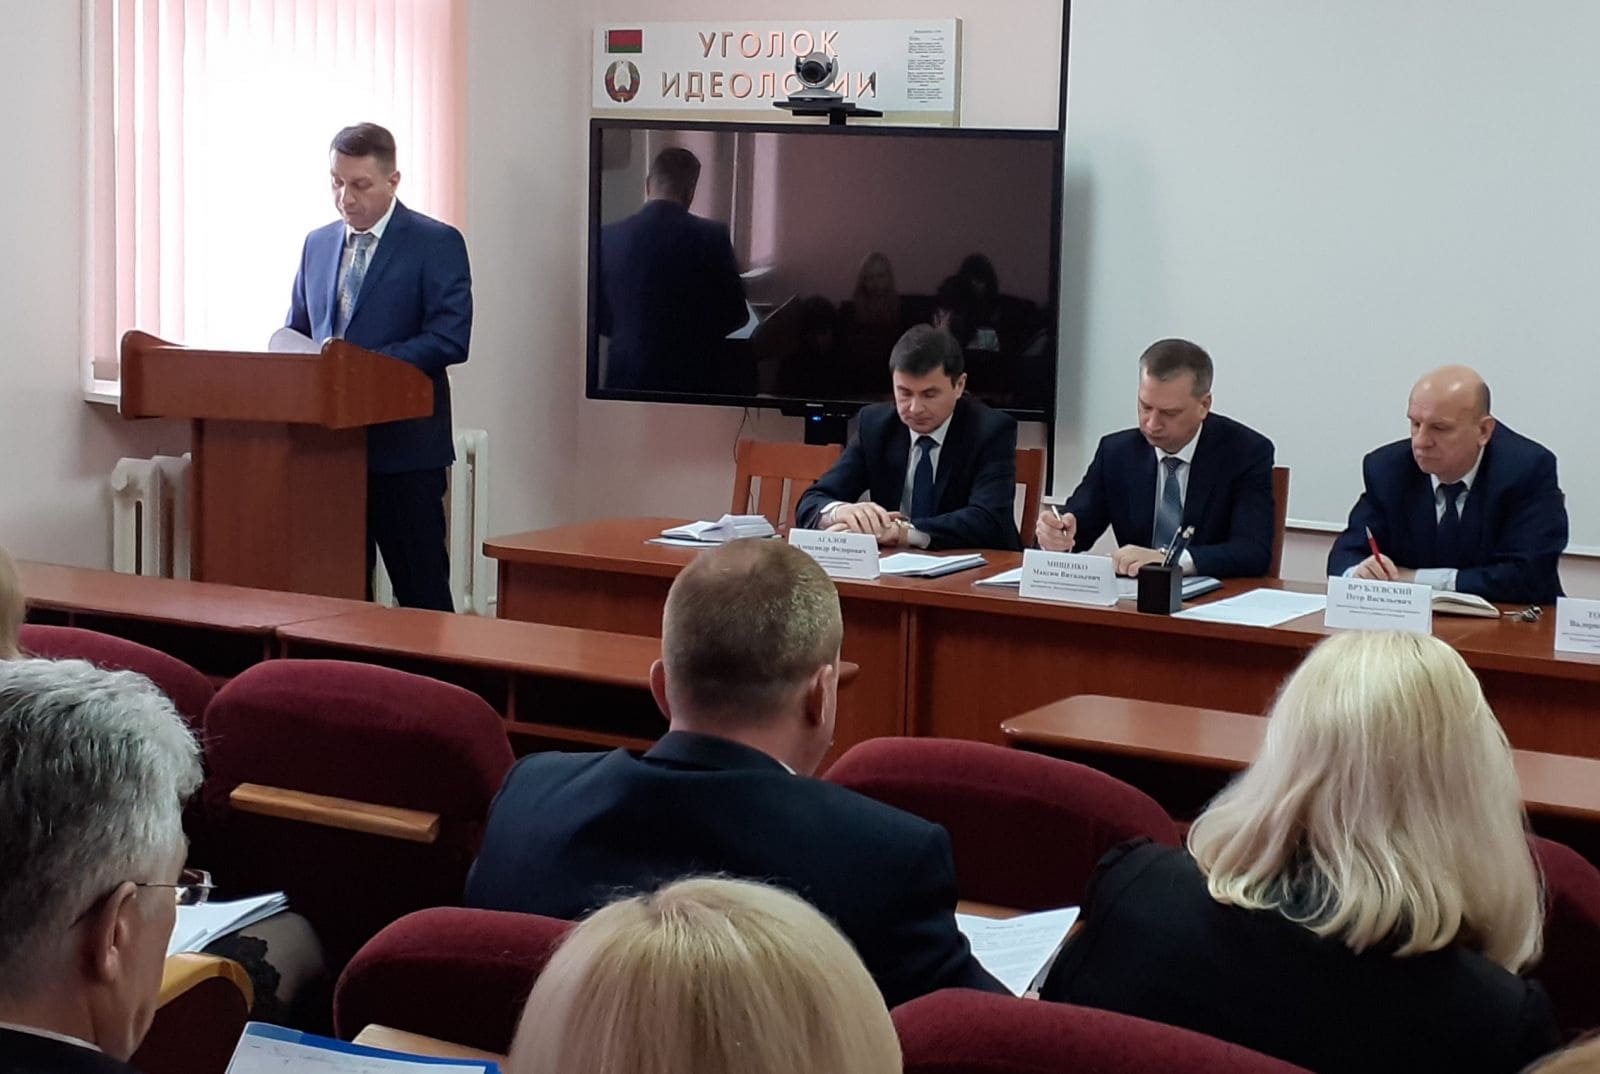 Итоги работы предприятия за 2019 развитие судебных экспертиз Беларусь